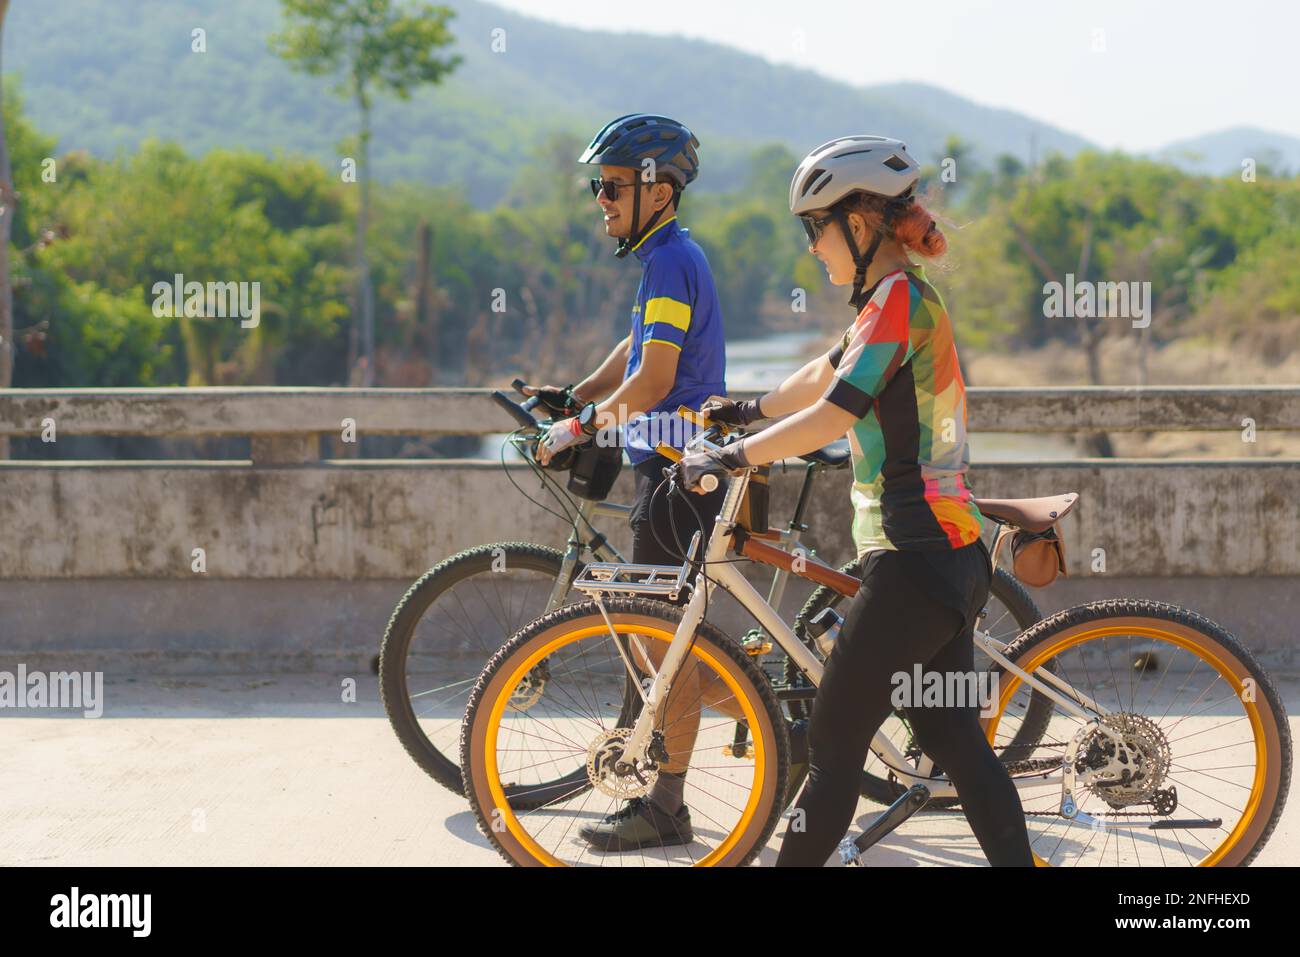 Asiatisches Fahrradpaar, das eine Pause vom Radfahren macht, macht eine Pause, geht spazieren und redet miteinander, um sich zu entspannen. Stockfoto